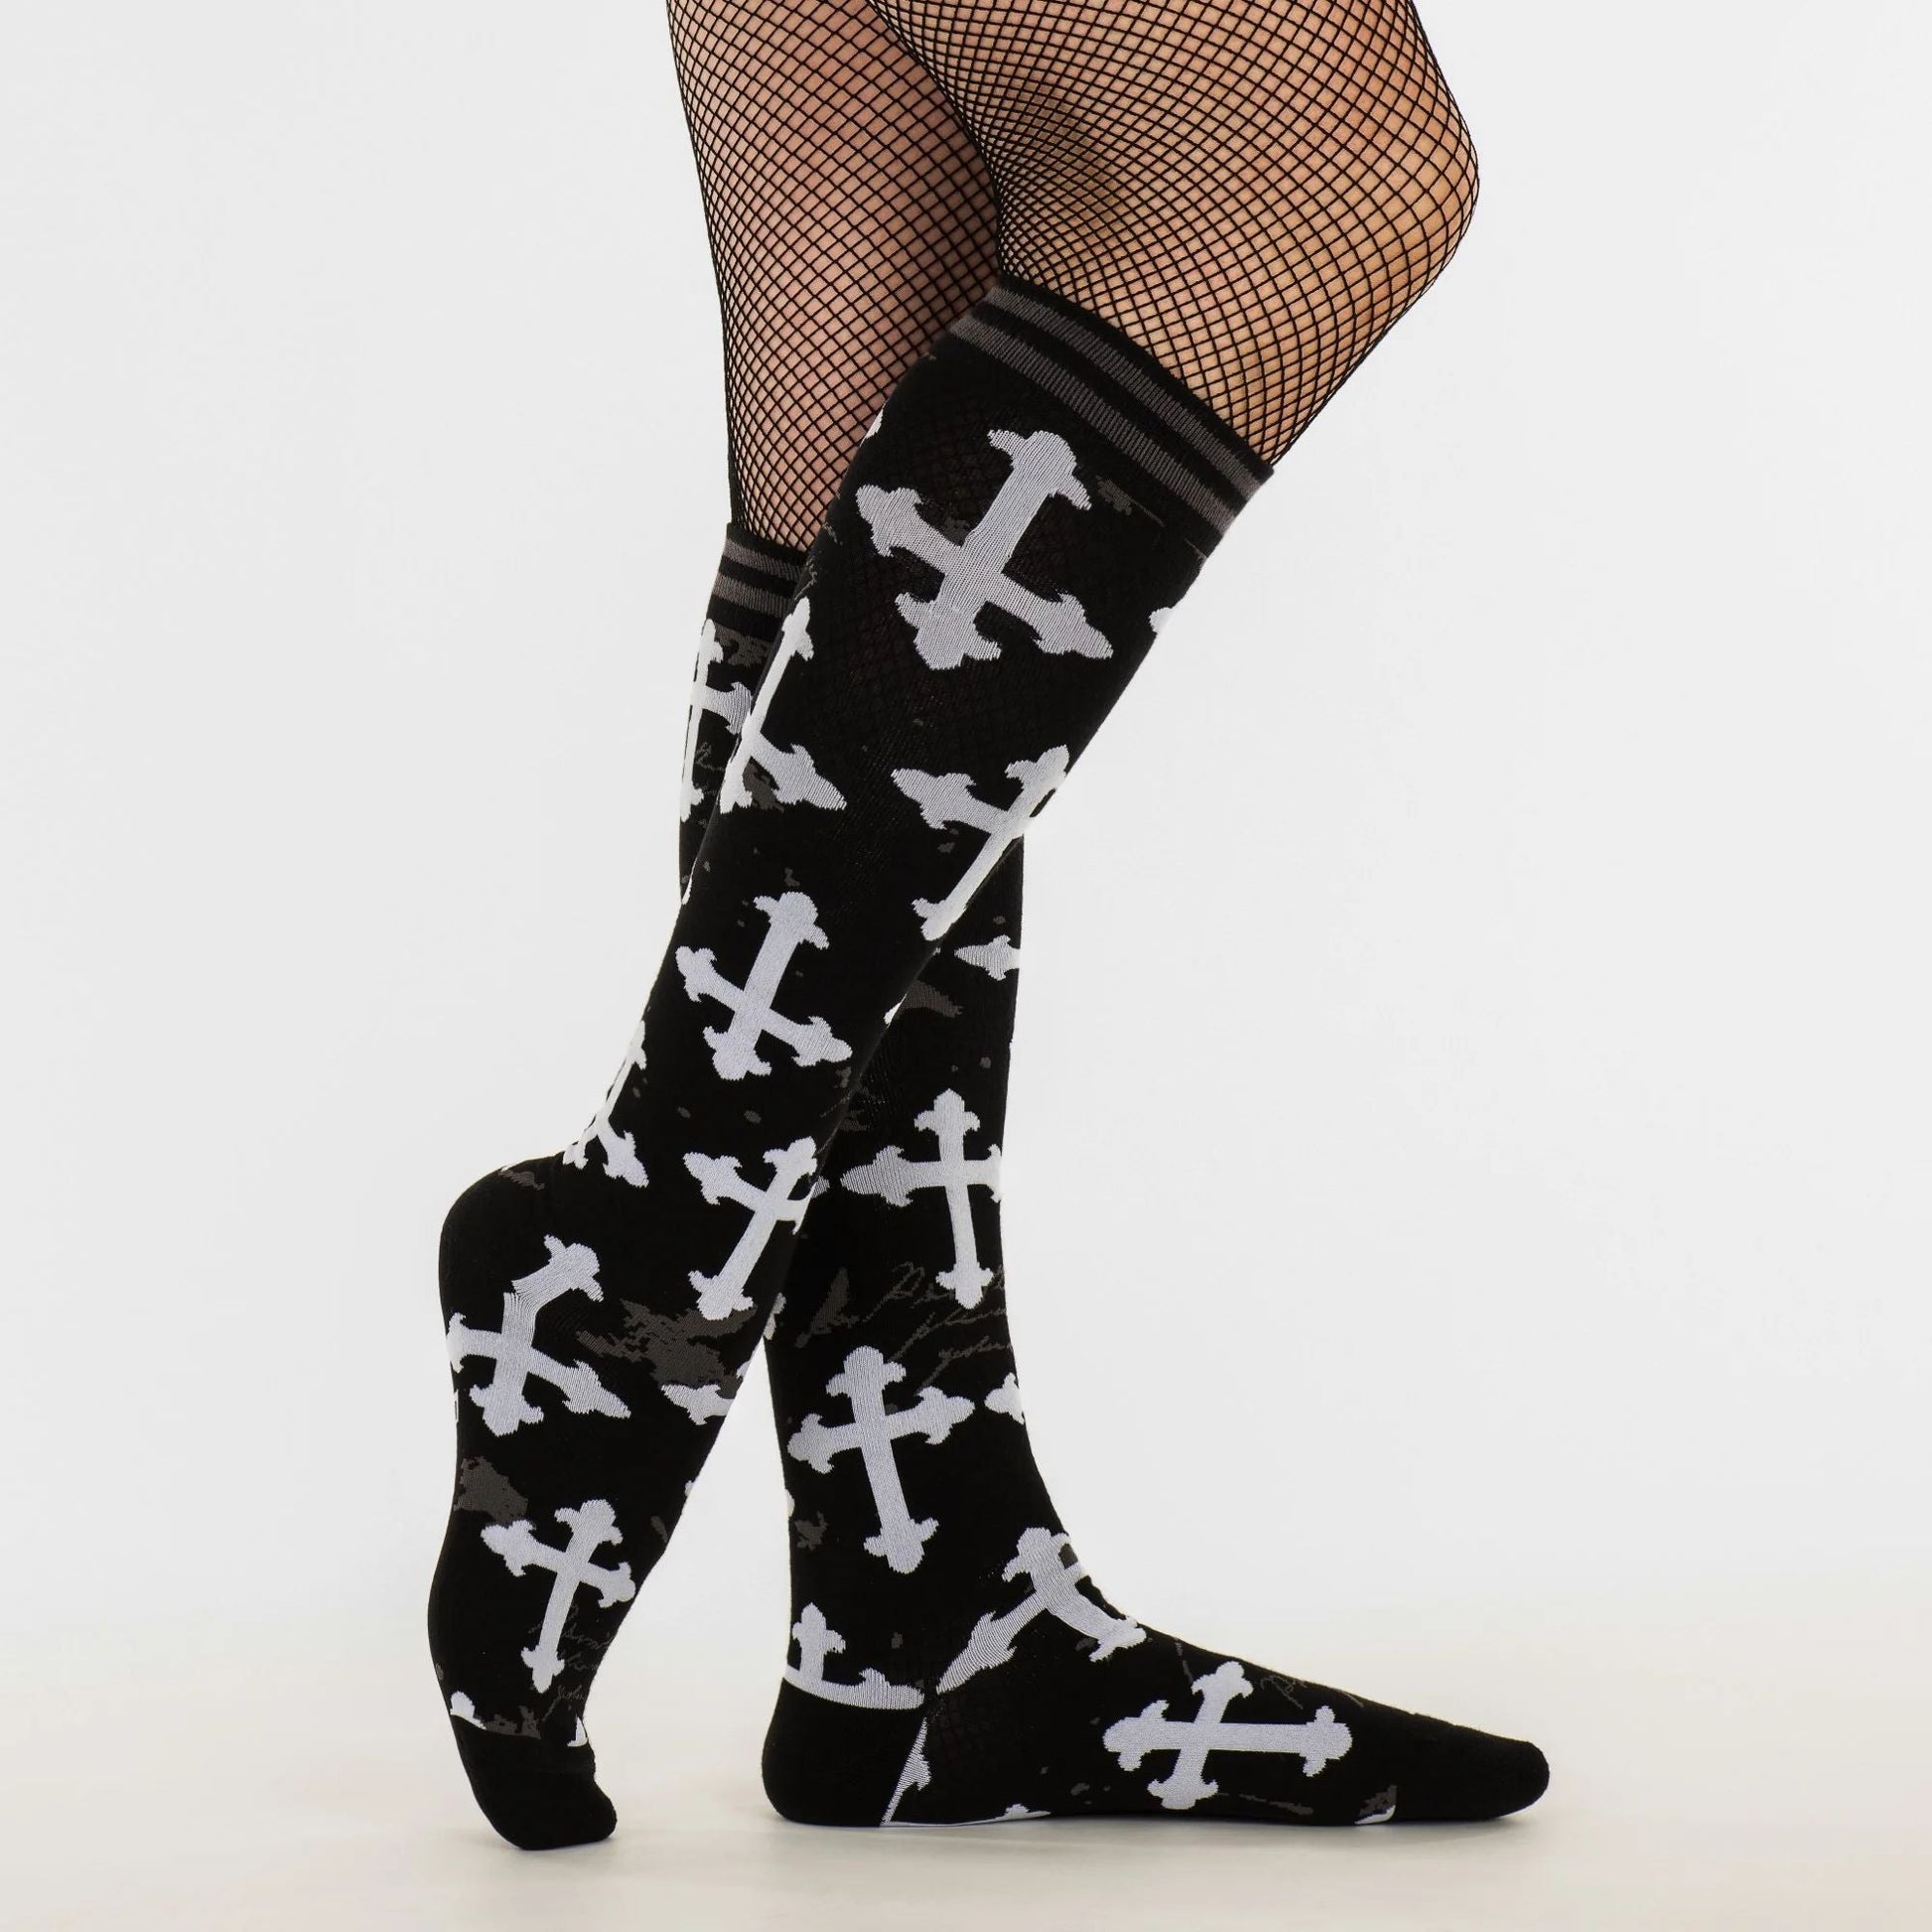 Gothic Crosses Knee High Socks